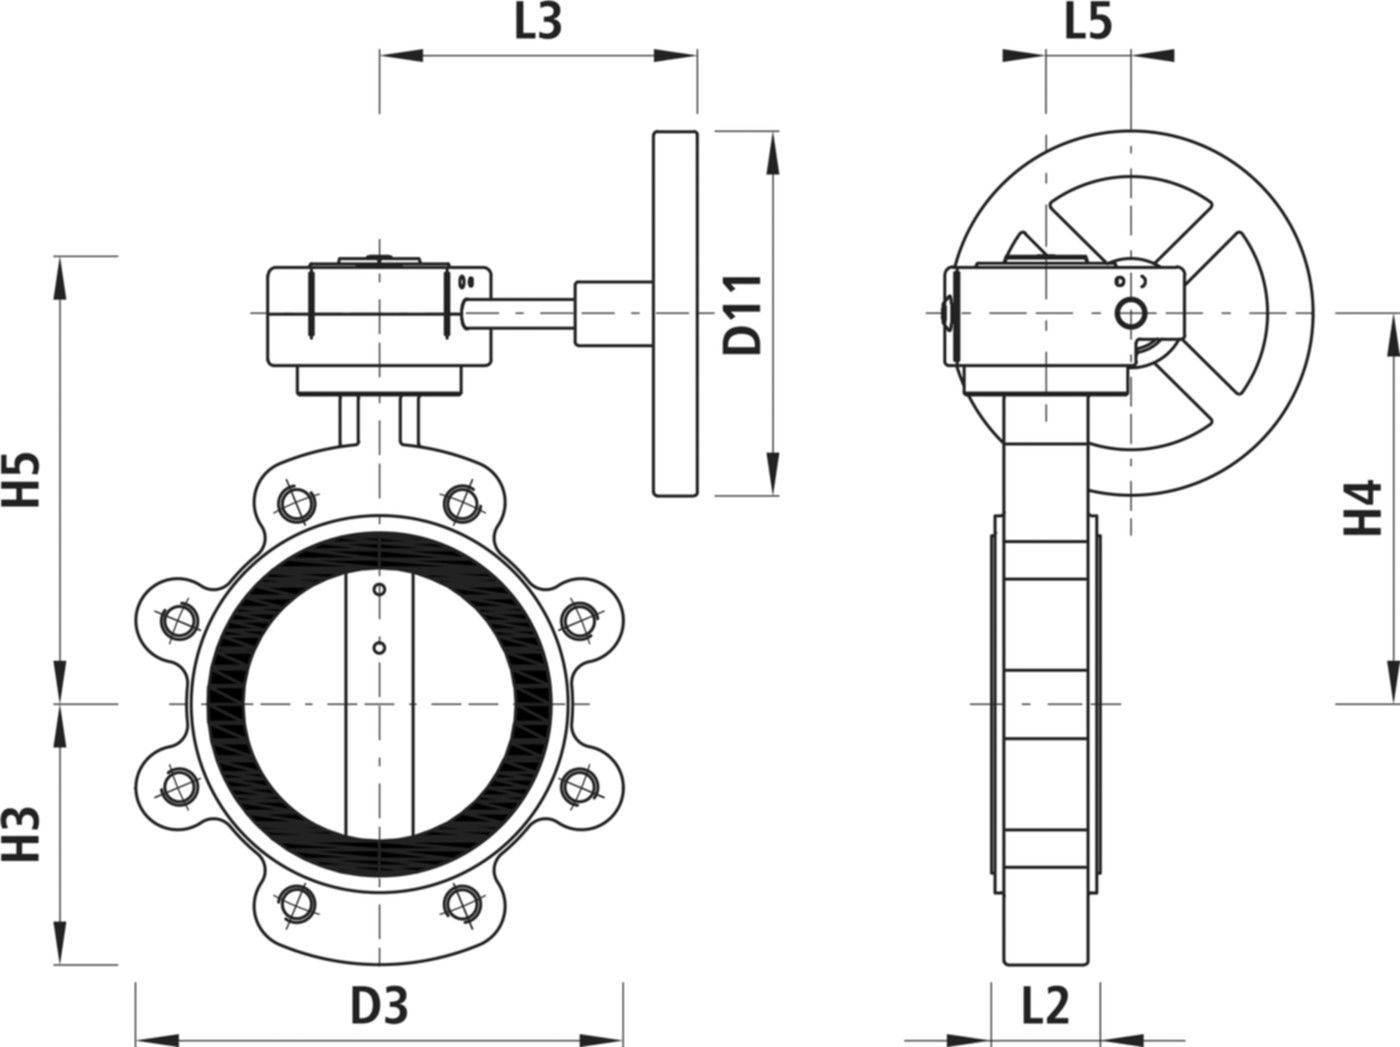 Absperrklappe mit Getriebe Typ LI 9943 DN 100 PN 16 - Hawle Absperrklappen